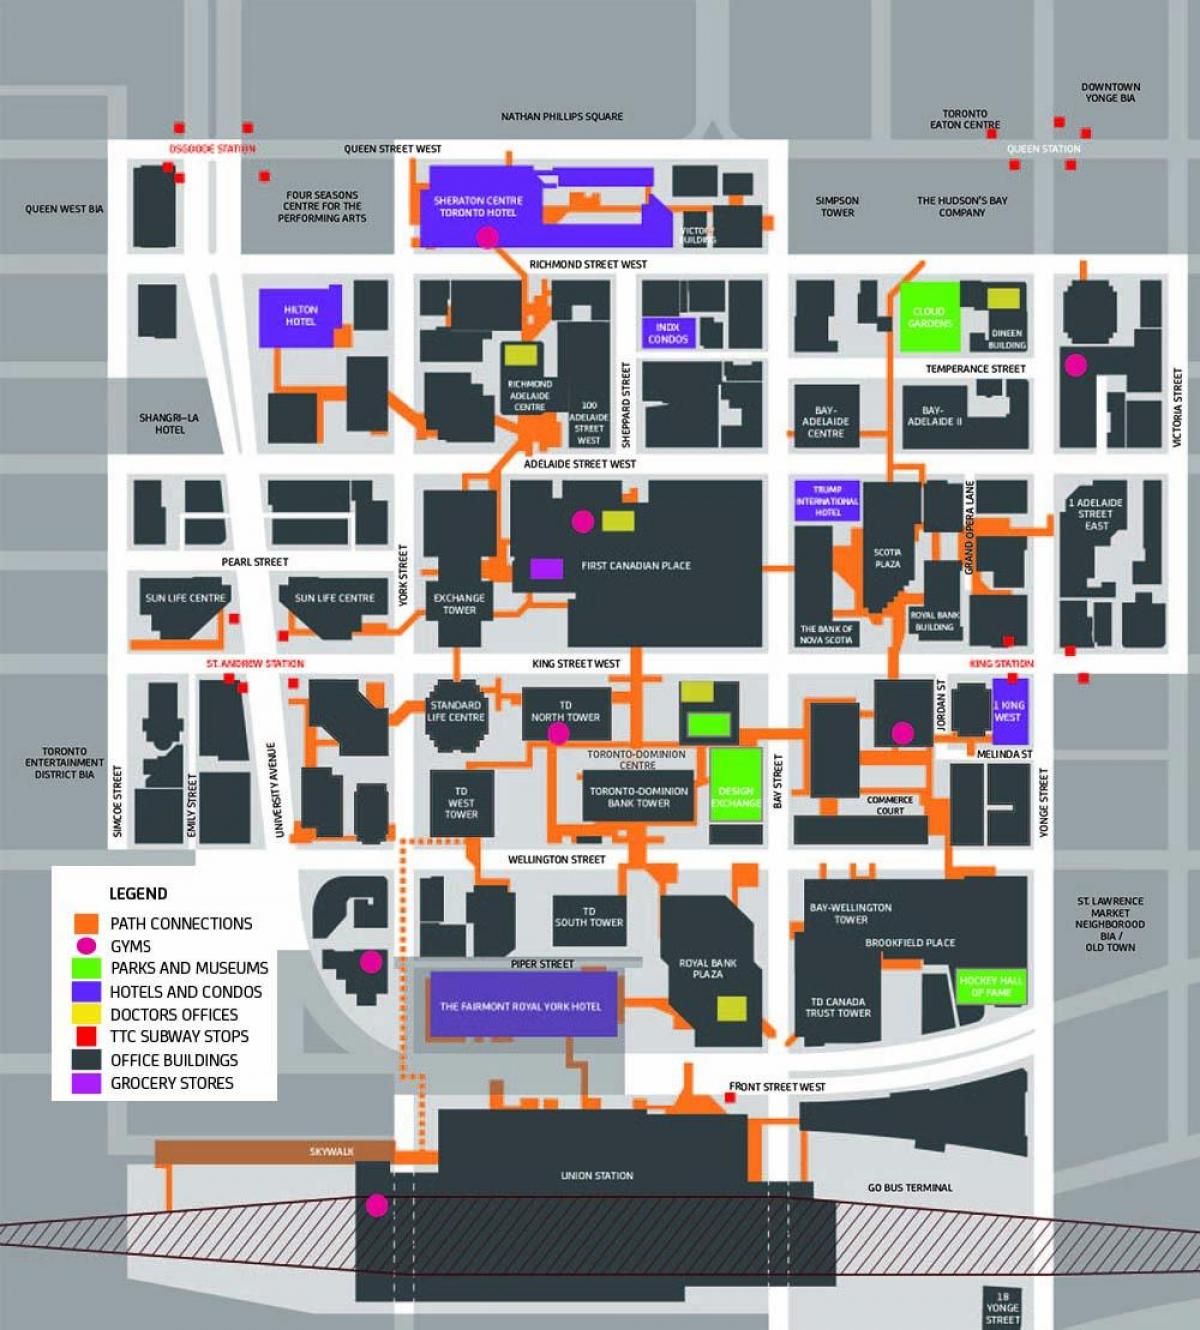 מפת הנתיב של טורונטו במרכז העיר מדרחוב